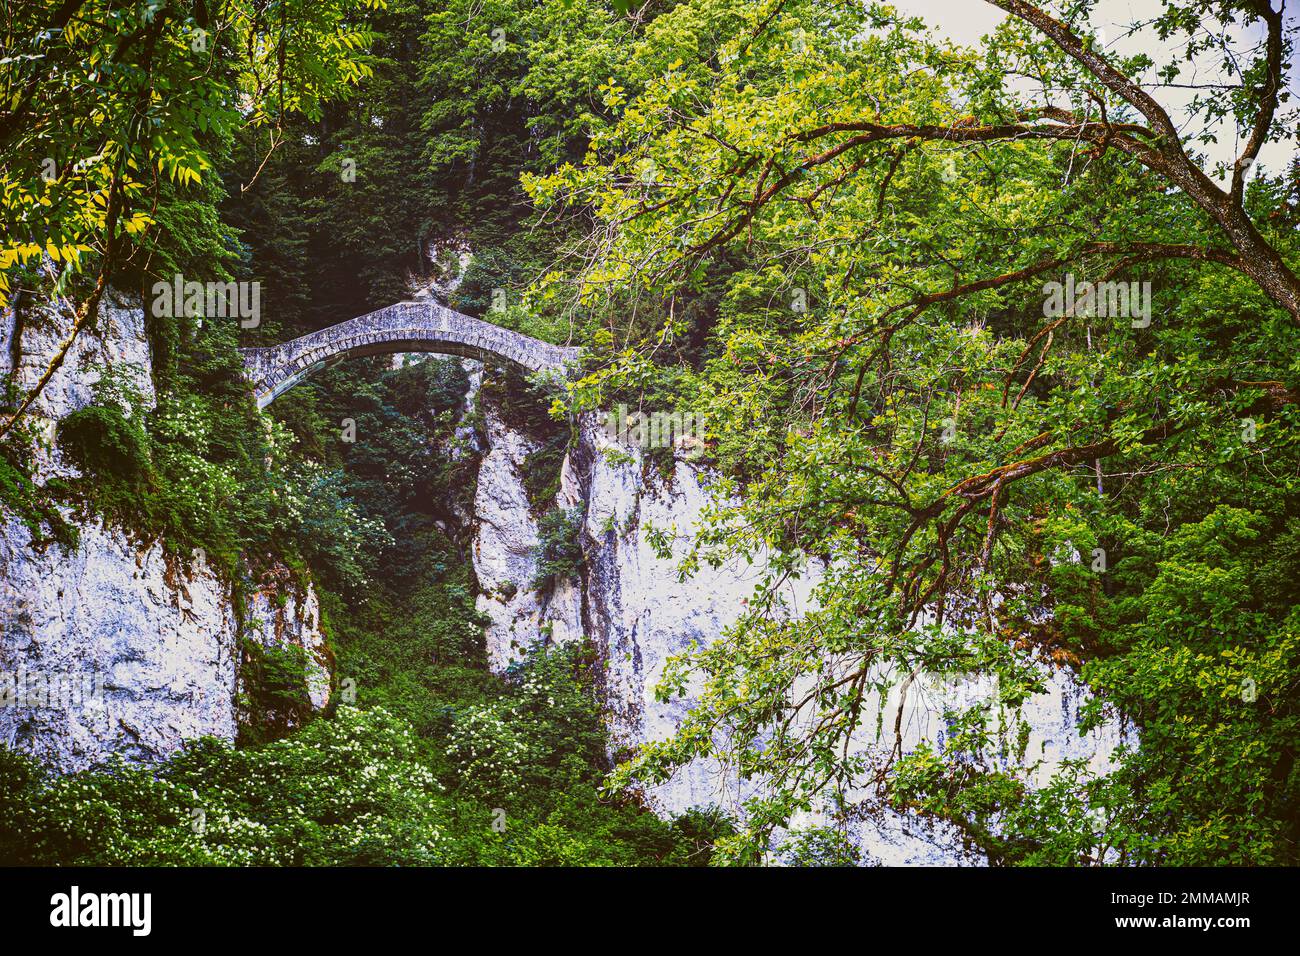 Die fürstliche Teufelsbrücke von Inzigkofen bei Sigmaringen, Deutschland Foto Stock